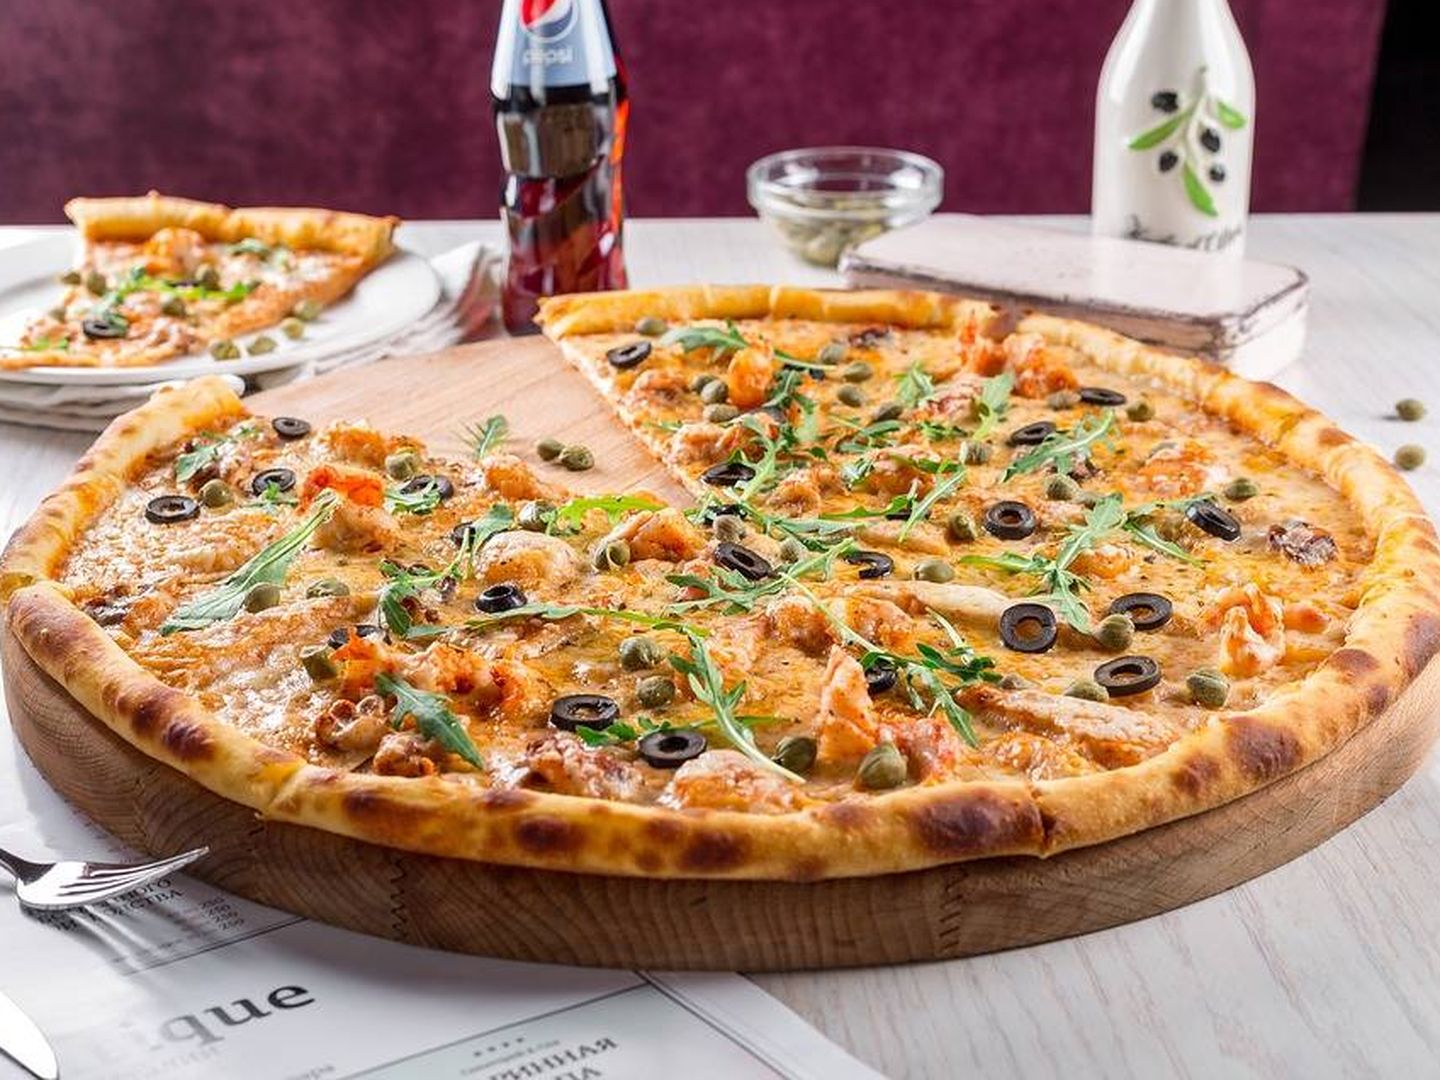 Una pizza puede ser un ultraprocesado si esta posee aditivos en su composición.